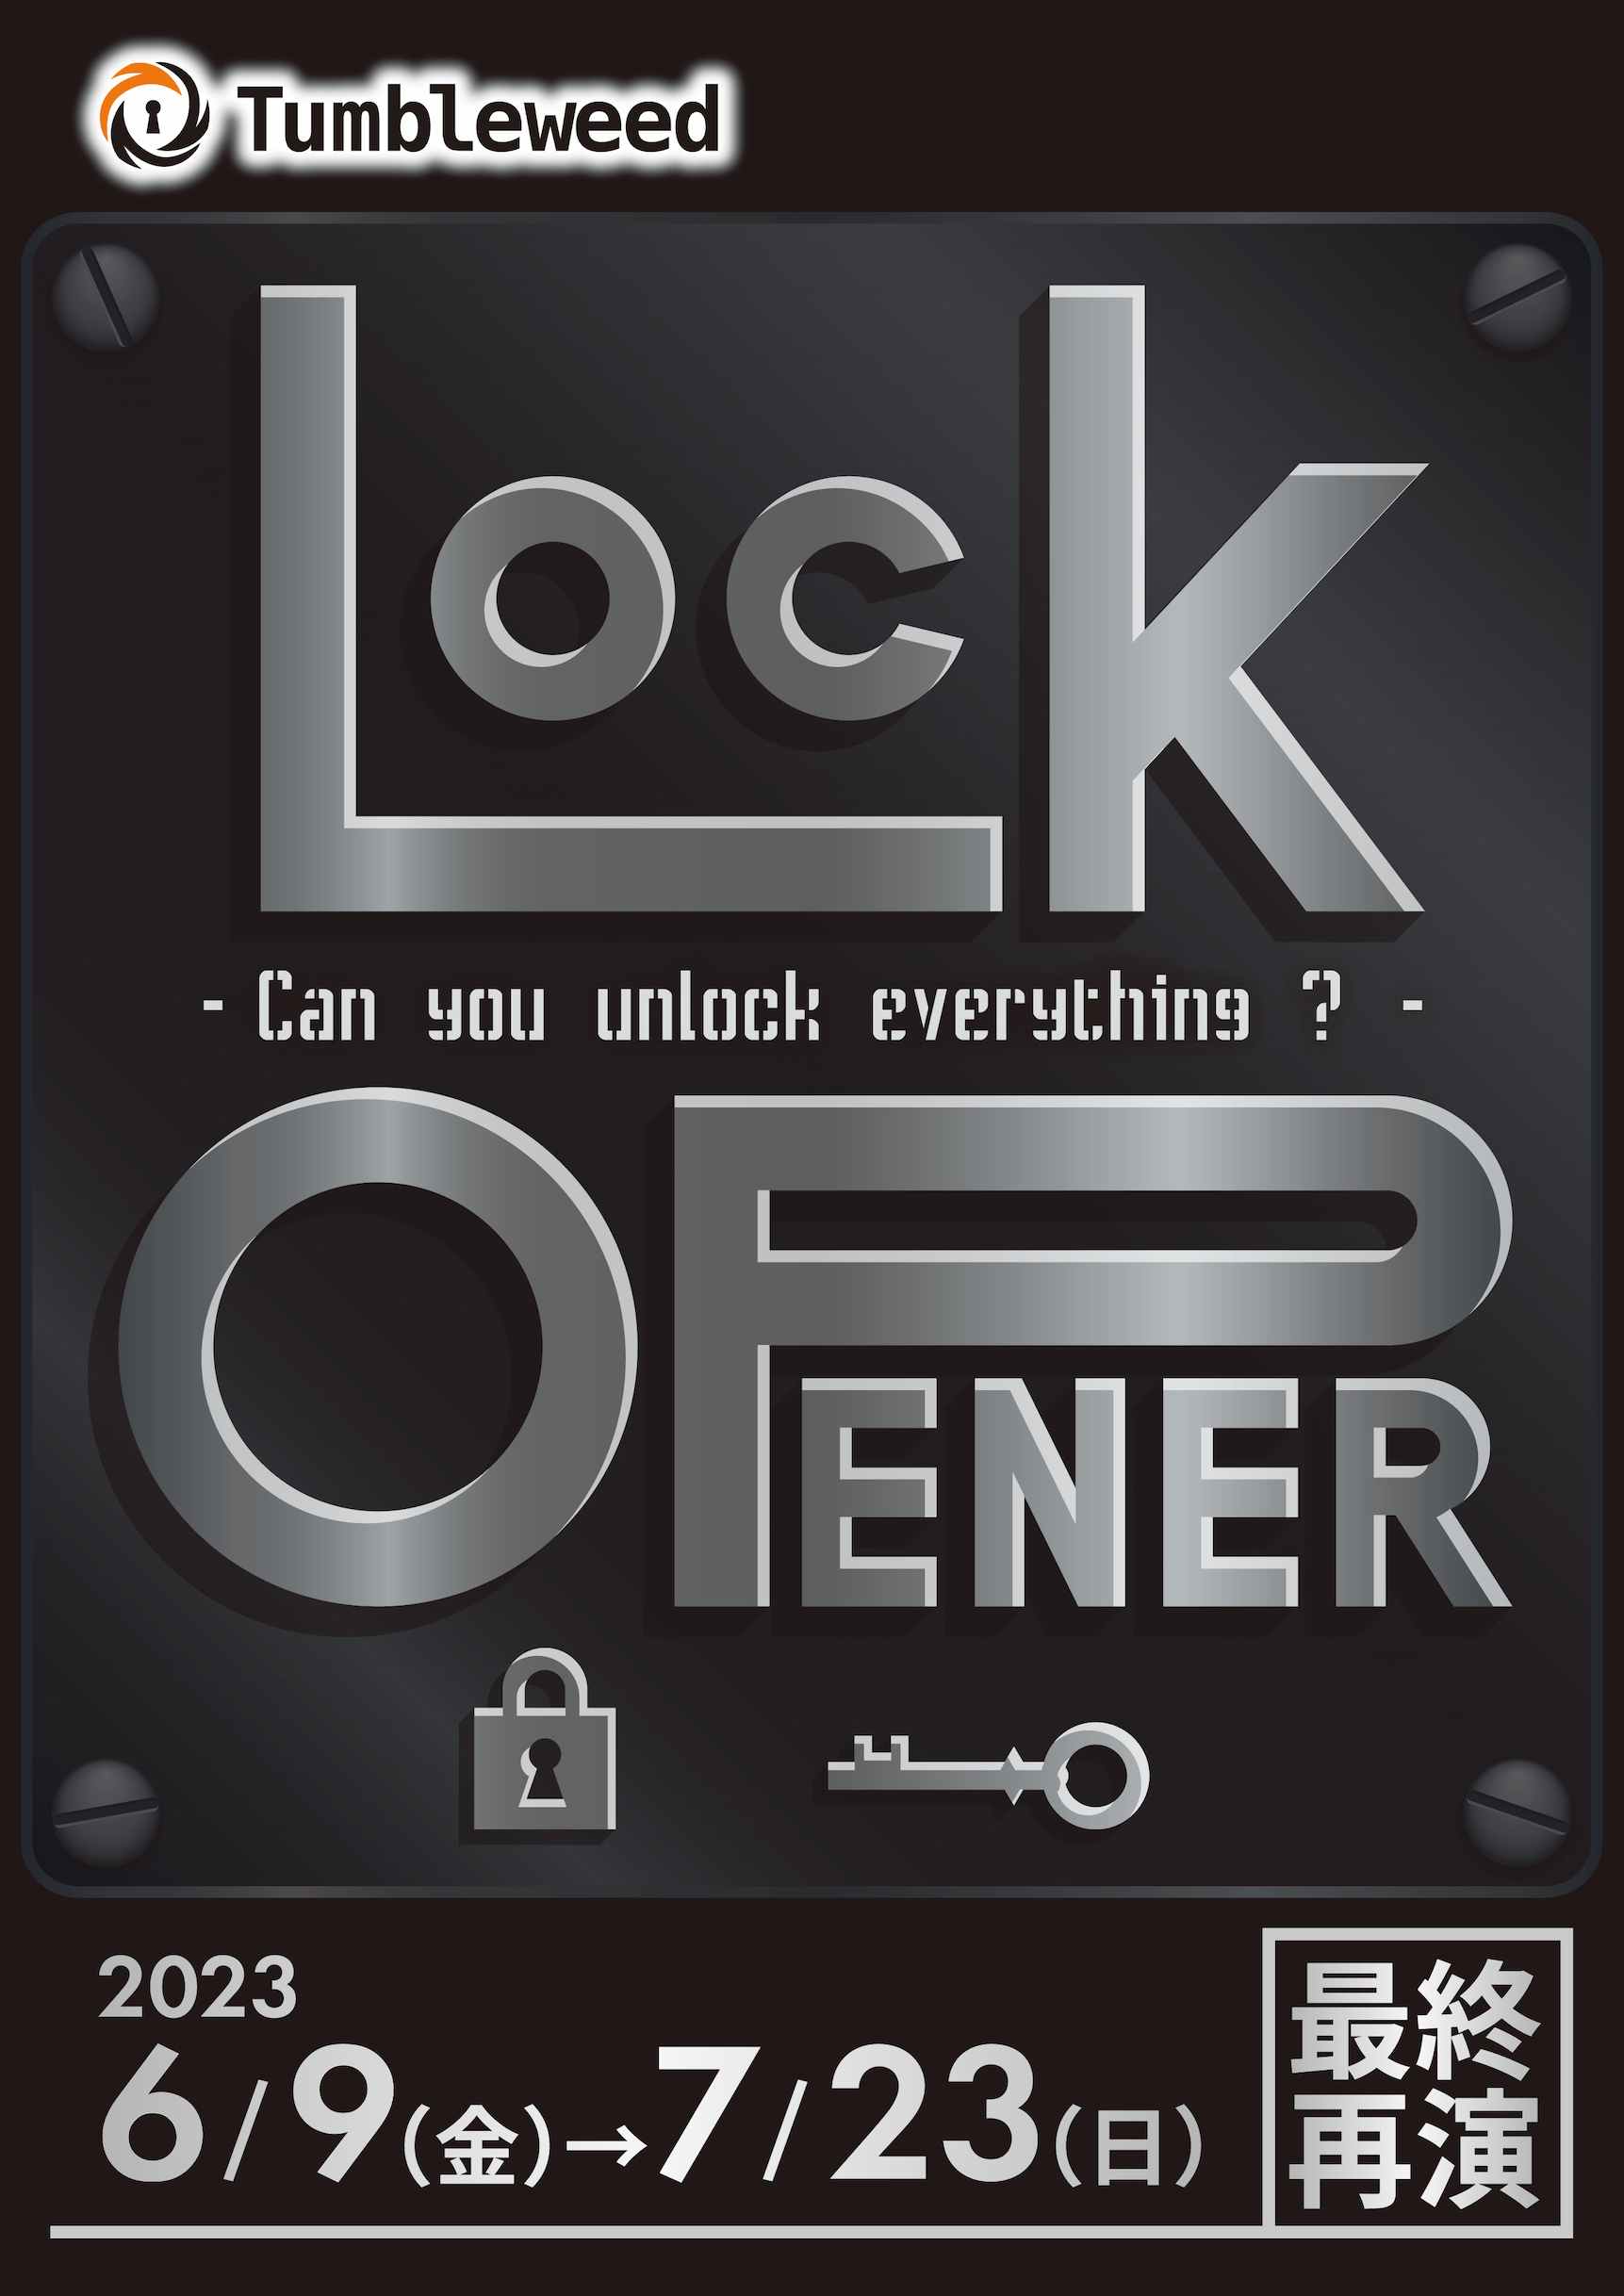  タンブルウィード『Lock Opener』【体験型謎解きゲーム】